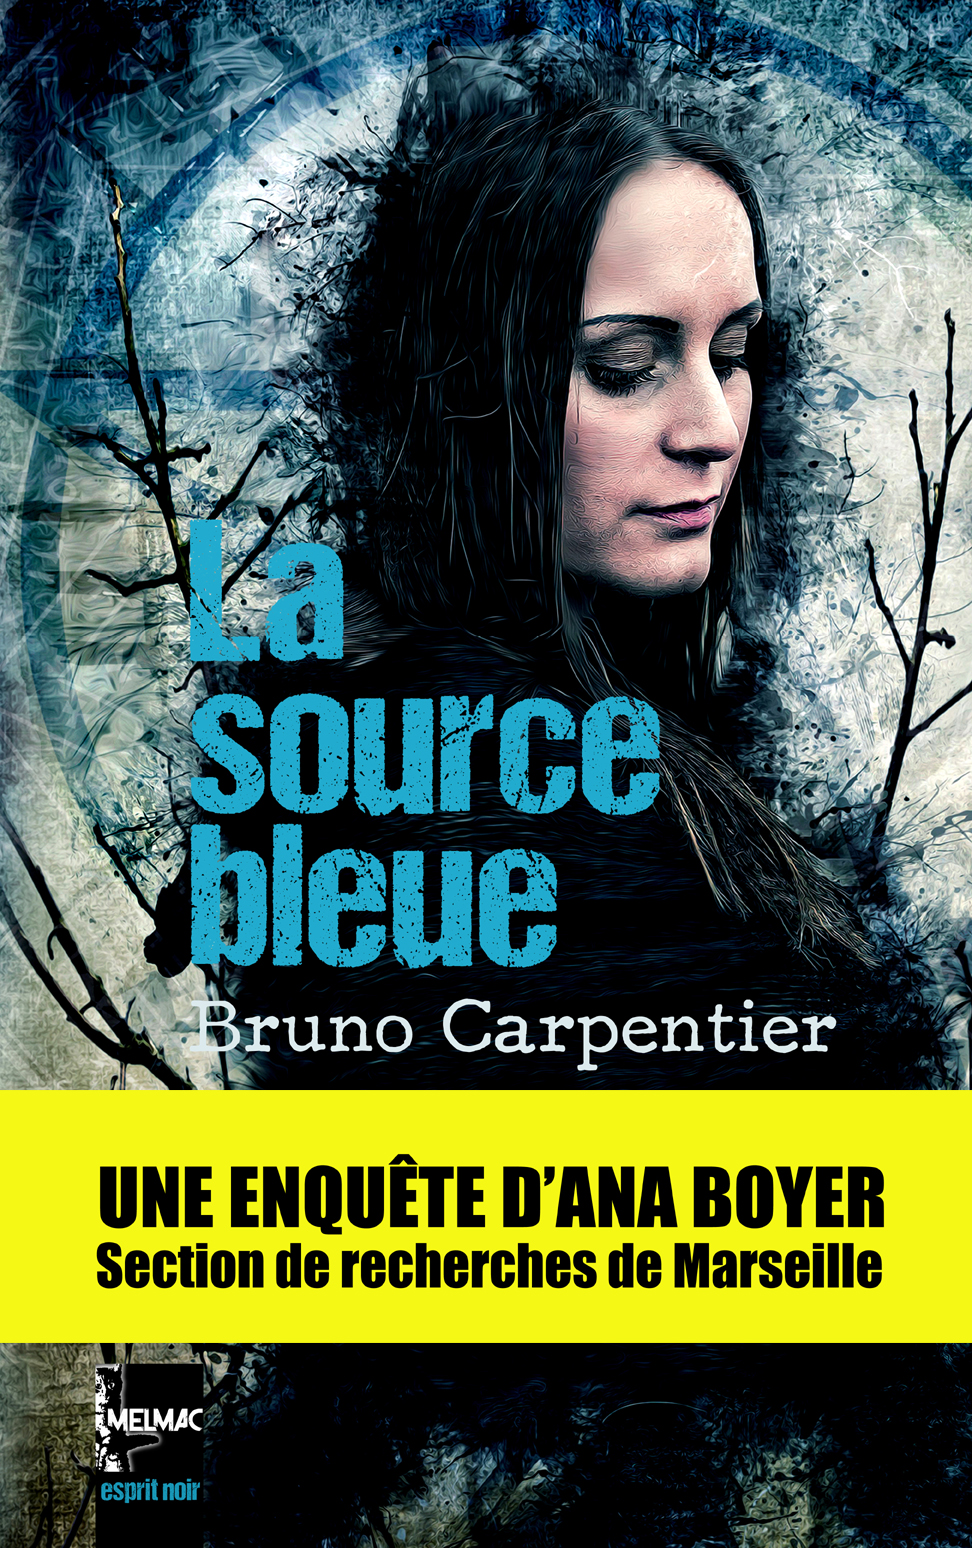 Bruno carpentier « la source bleue »